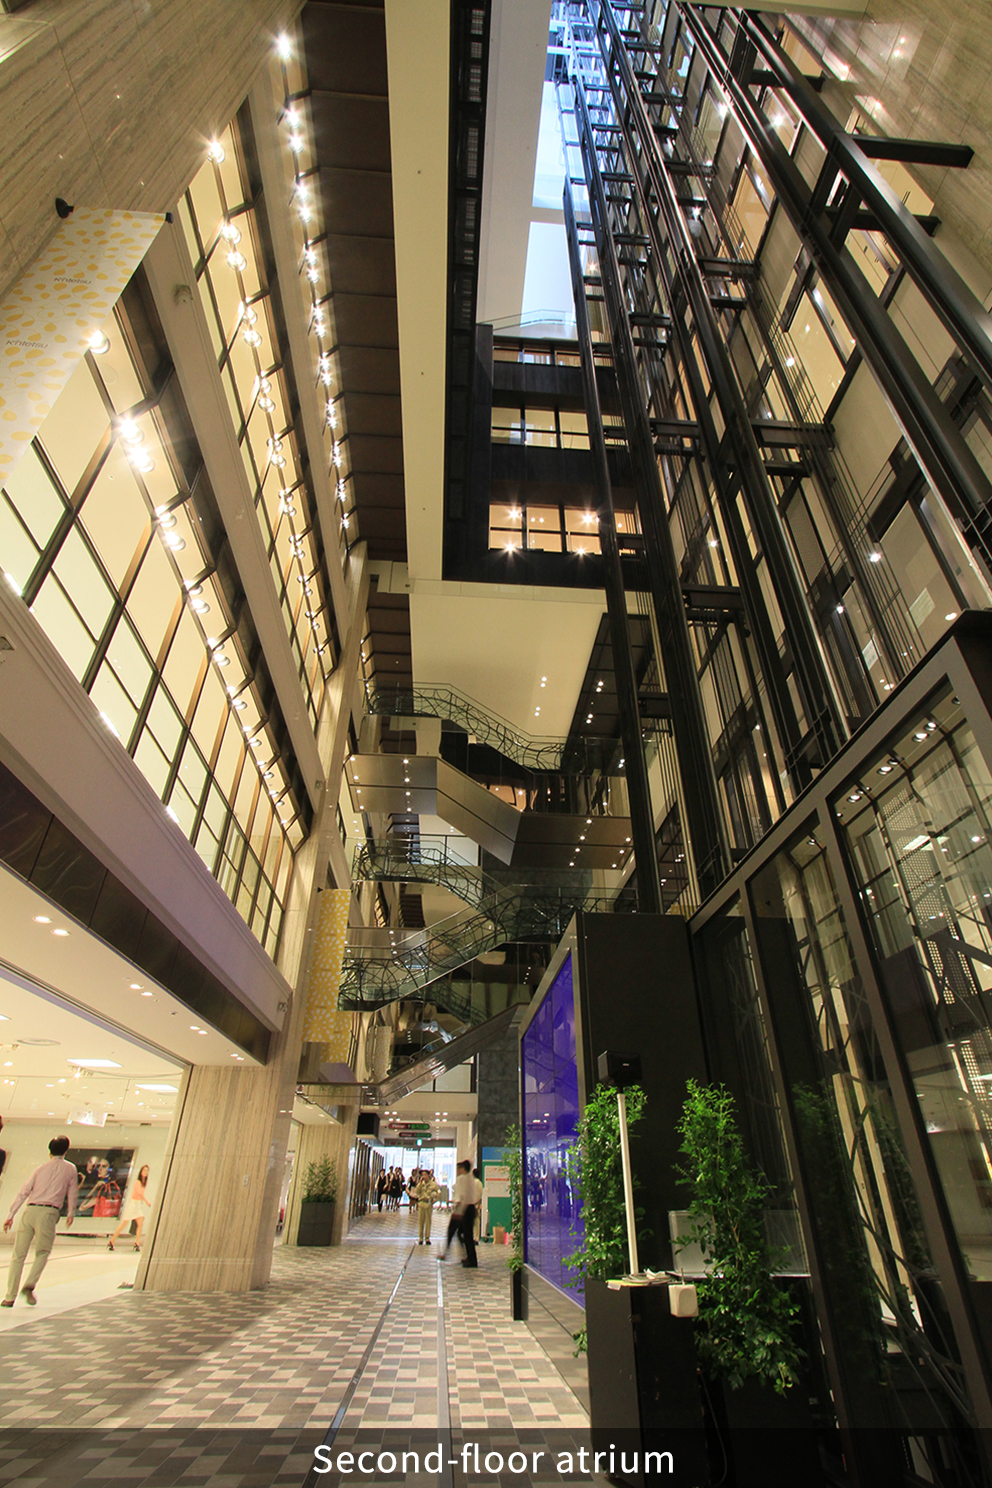 Second-floor atrium